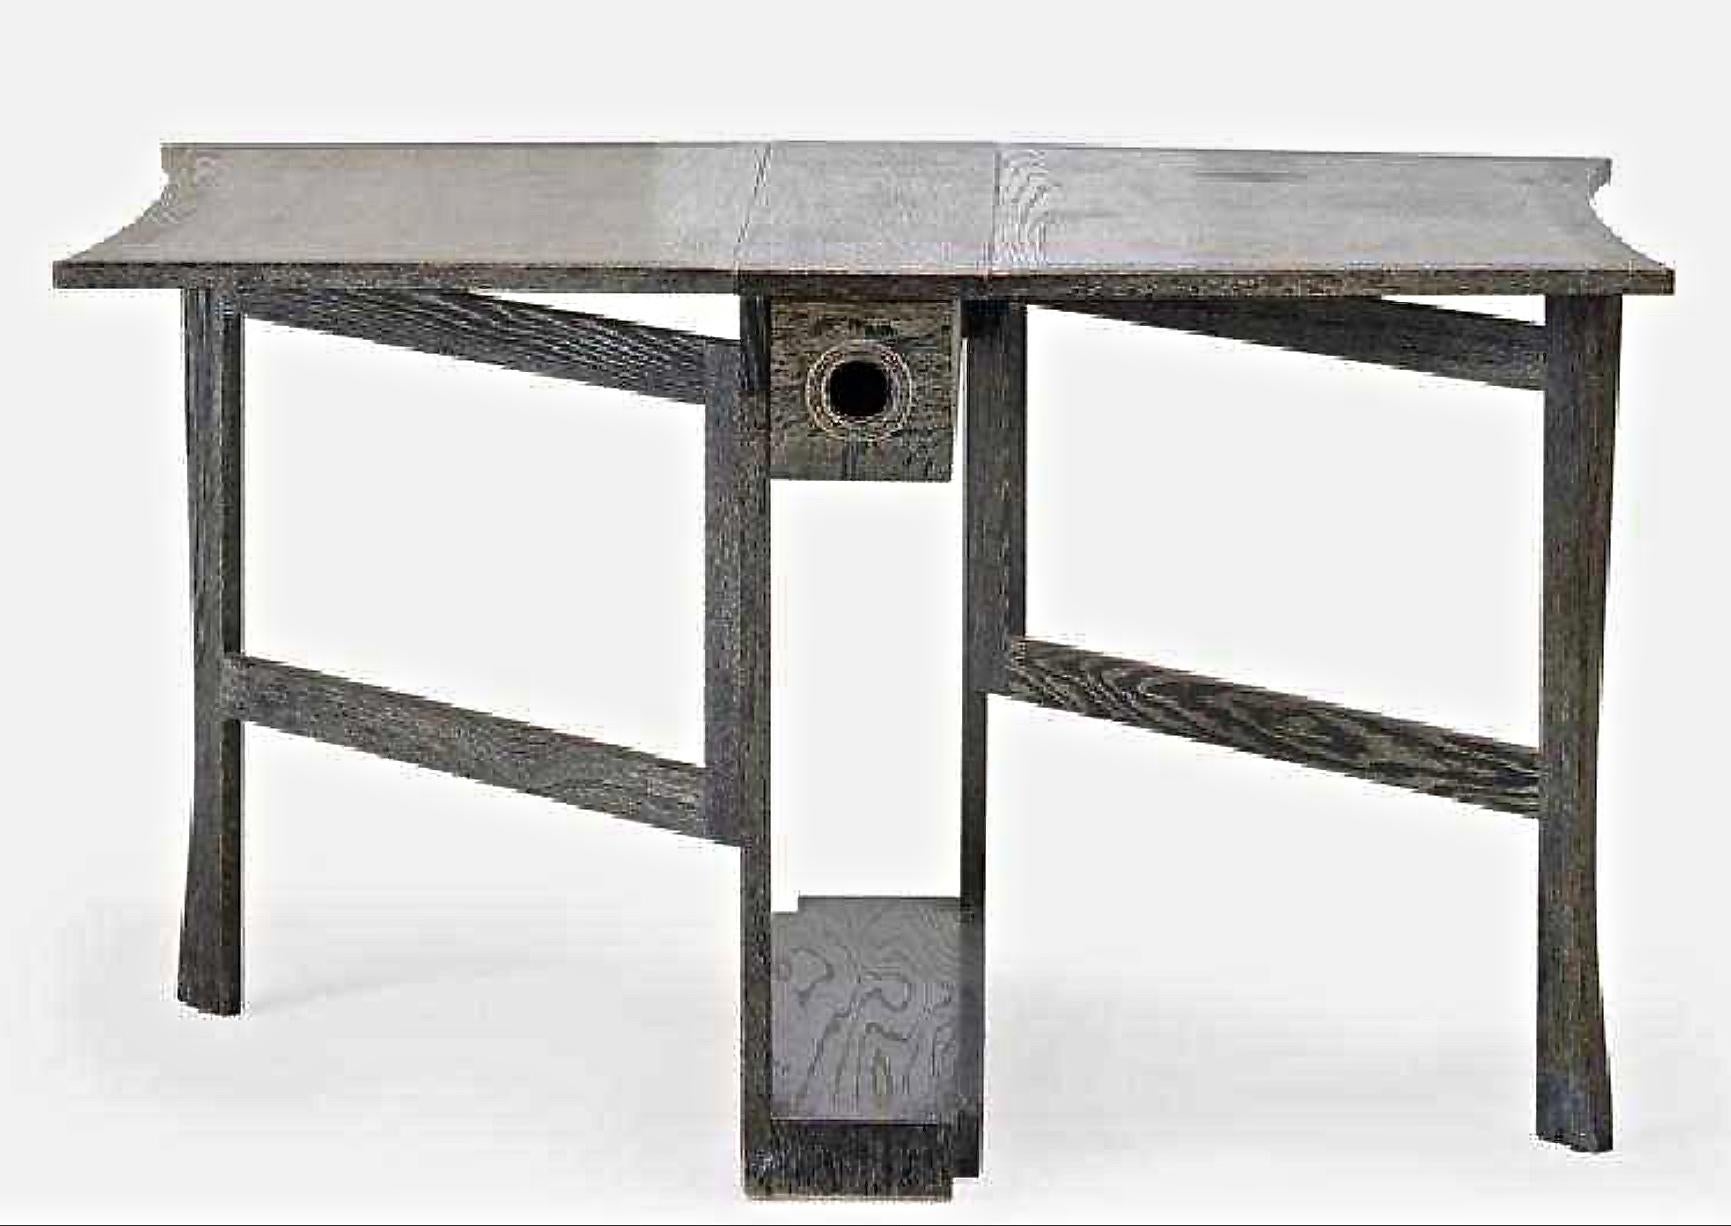 Dies ist der schickste und stilvollste kleine Tisch mit Torbein:: der sich perfekt für einen Pieds-a-terre eignet:: um ihn zum Essen:: Schreiben oder Servieren zu verwenden. 

Dieser von James Mont entworfene und mit 